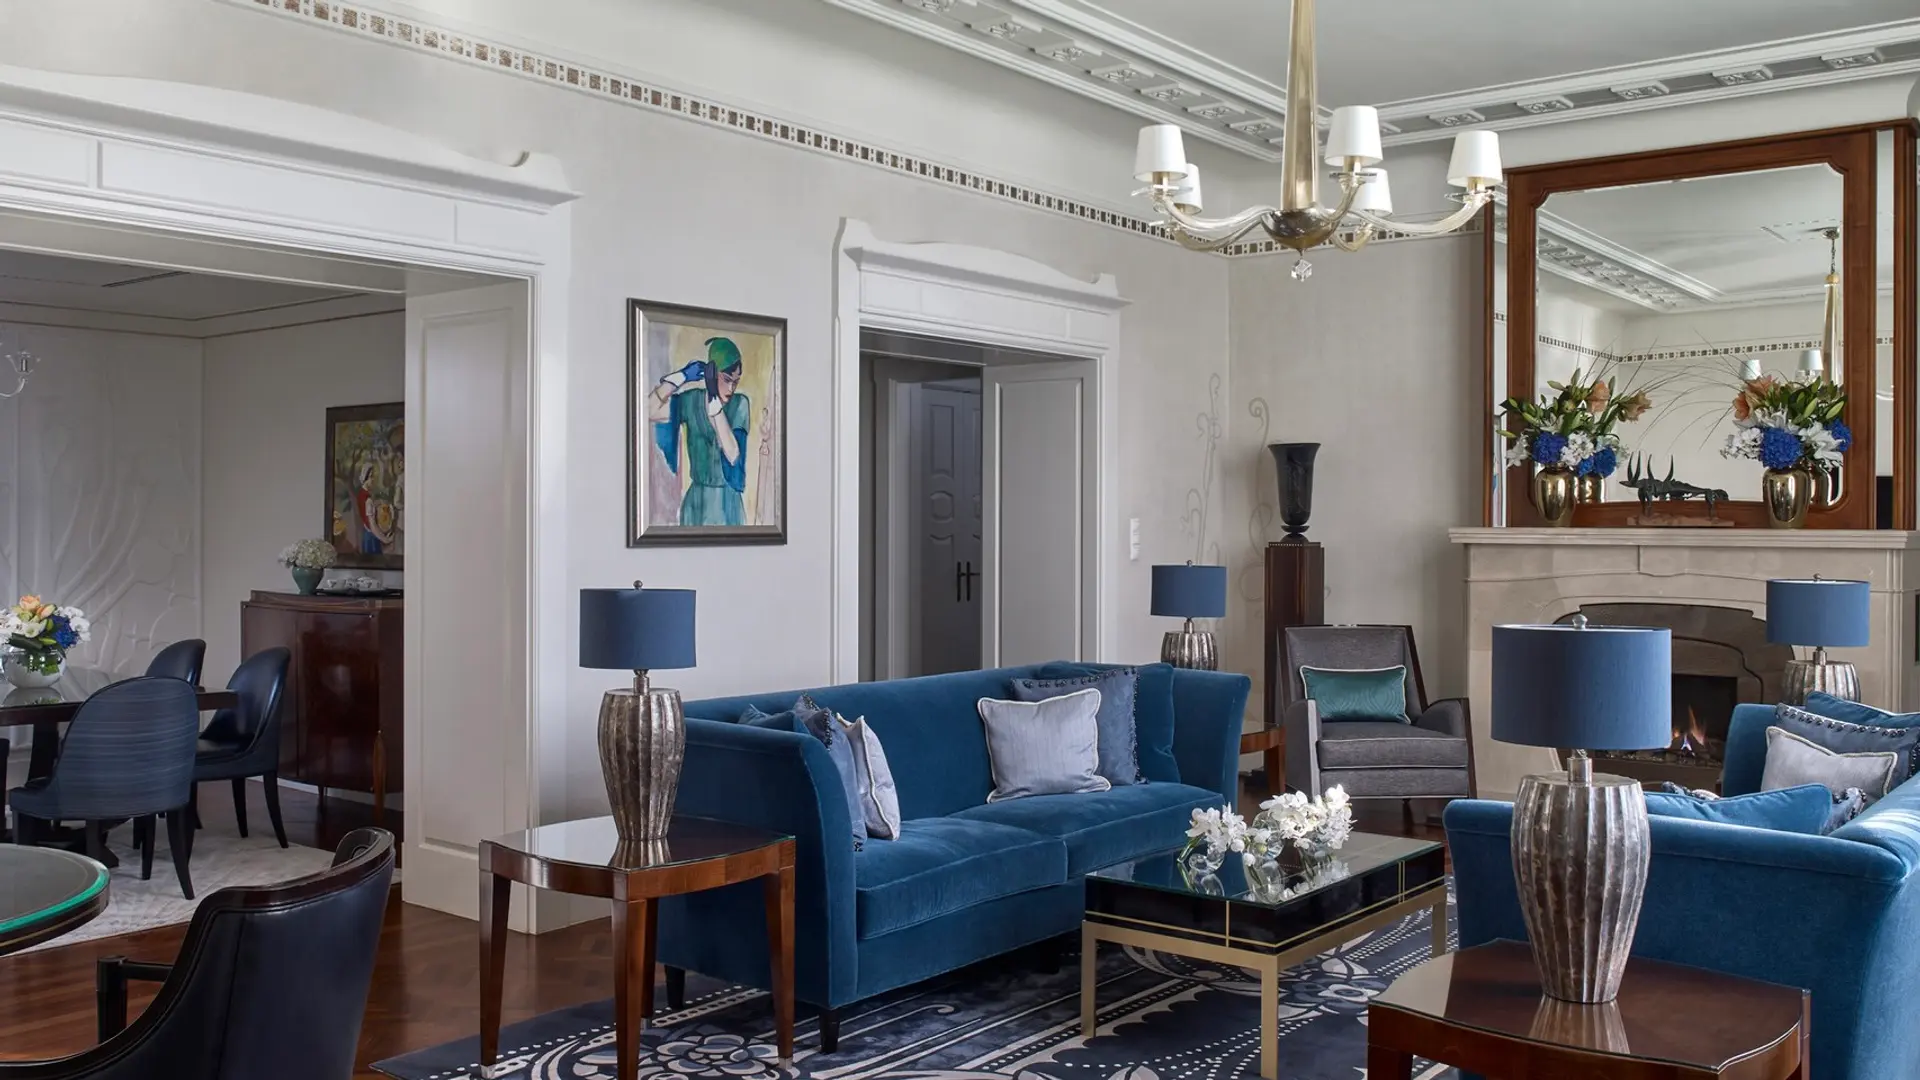 Hotel review Accommodation' - Four Seasons Hotel Gresham Palace Budapest - 12